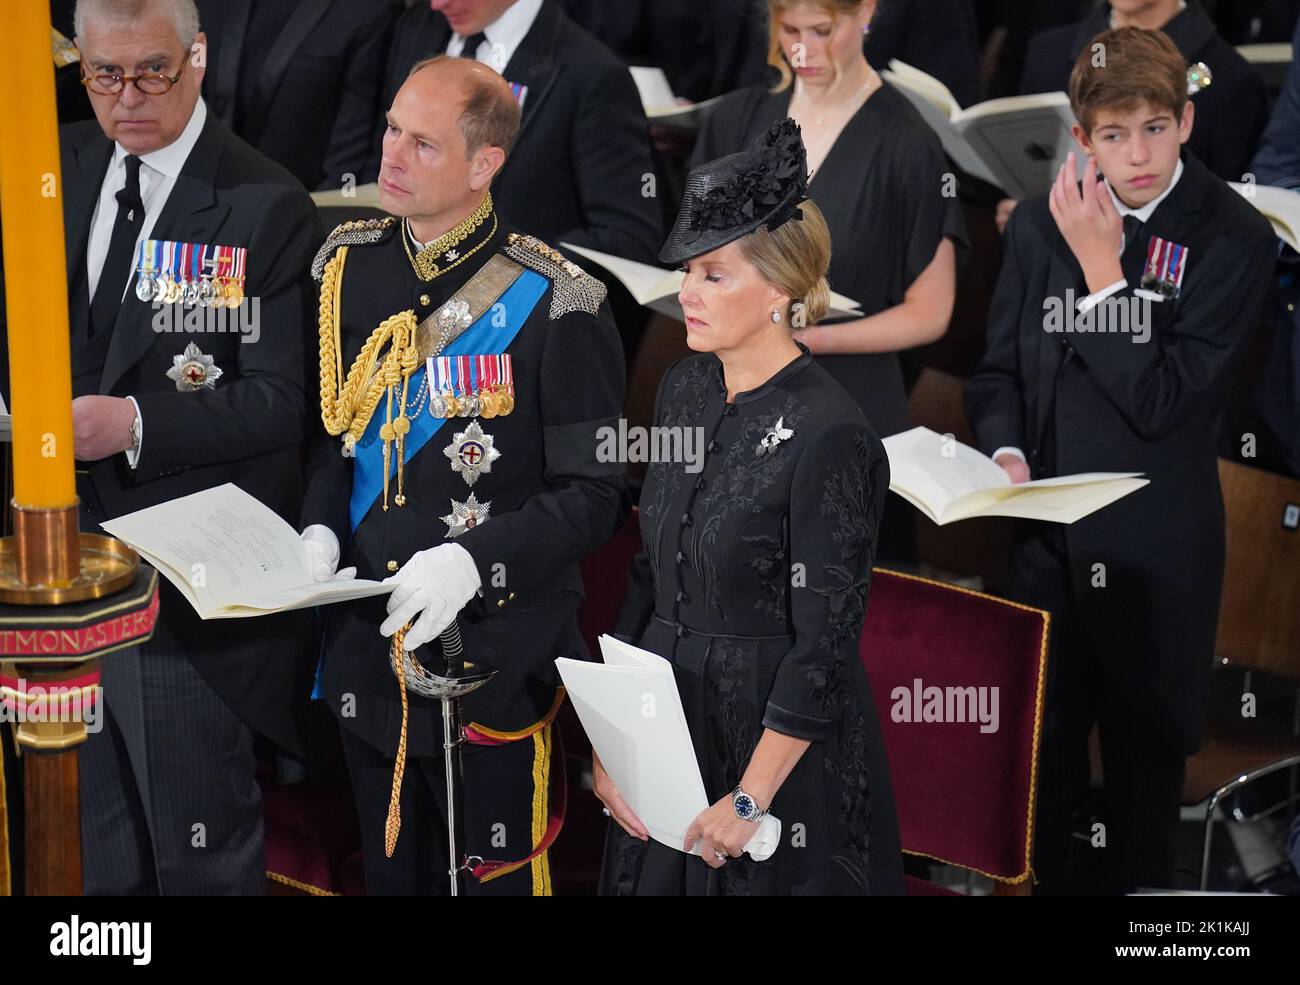 (Da sinistra a destra) il Duca di York, il Conte di Wessex, la Contessa di Wessex e James, Visconte Severn durante i funerali di Stato della Regina Elisabetta II presso l'Abbazia di Londra. Data immagine: Lunedì 19 settembre 2022. Foto Stock